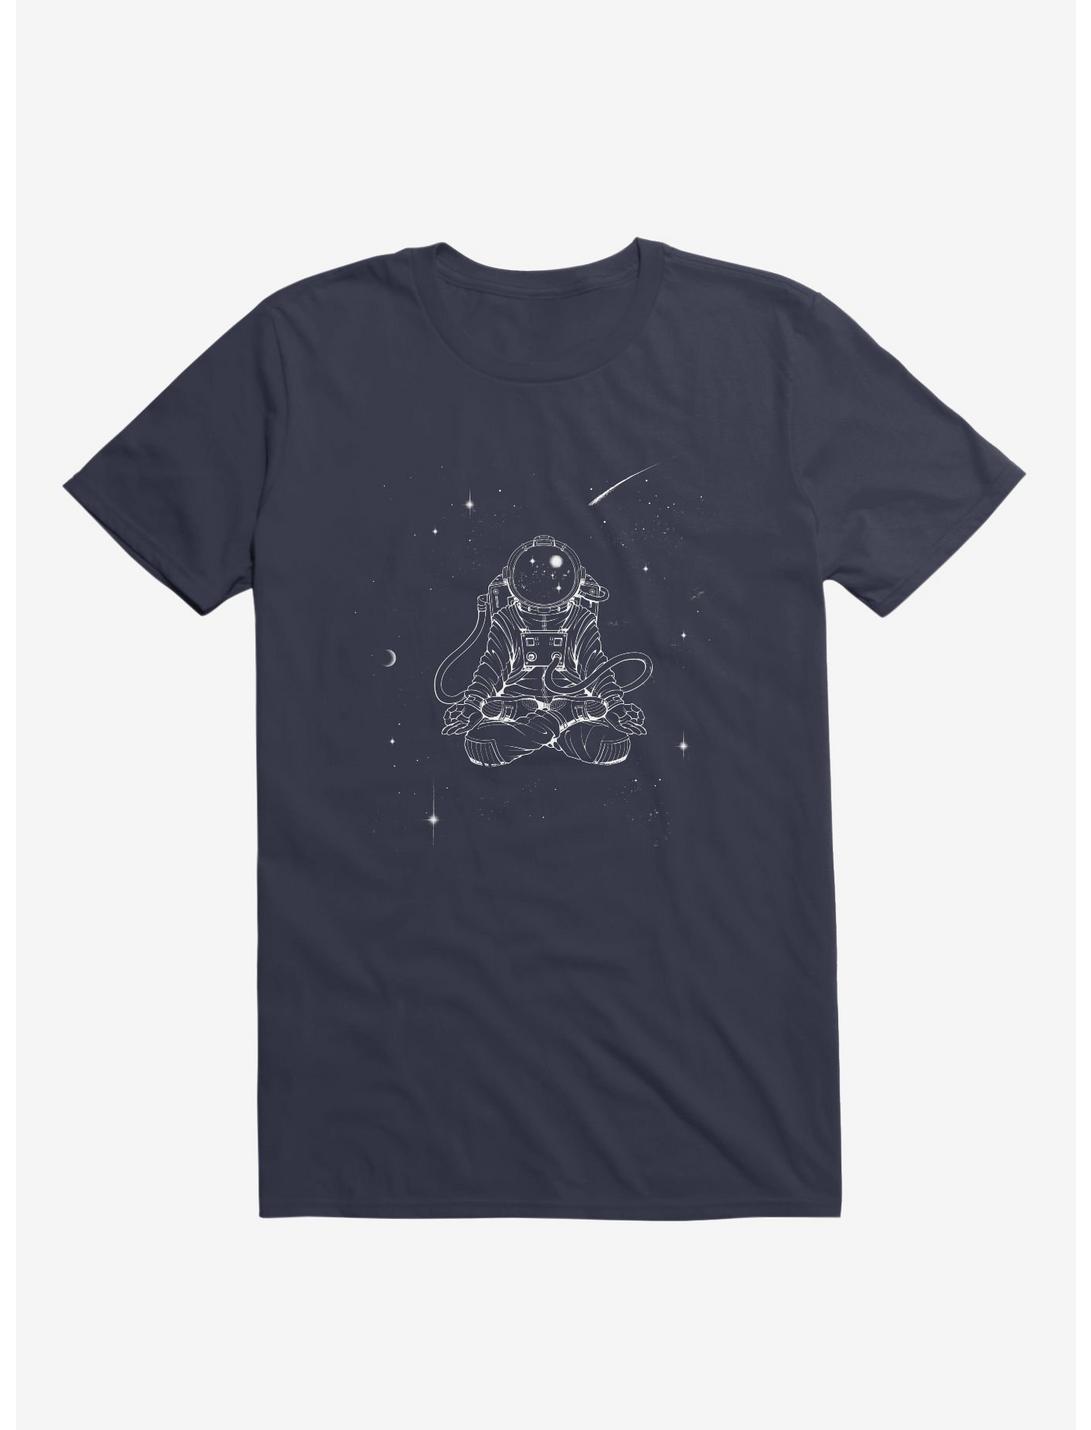 Zen Astronaut Navy Blue T-Shirt, NAVY, hi-res